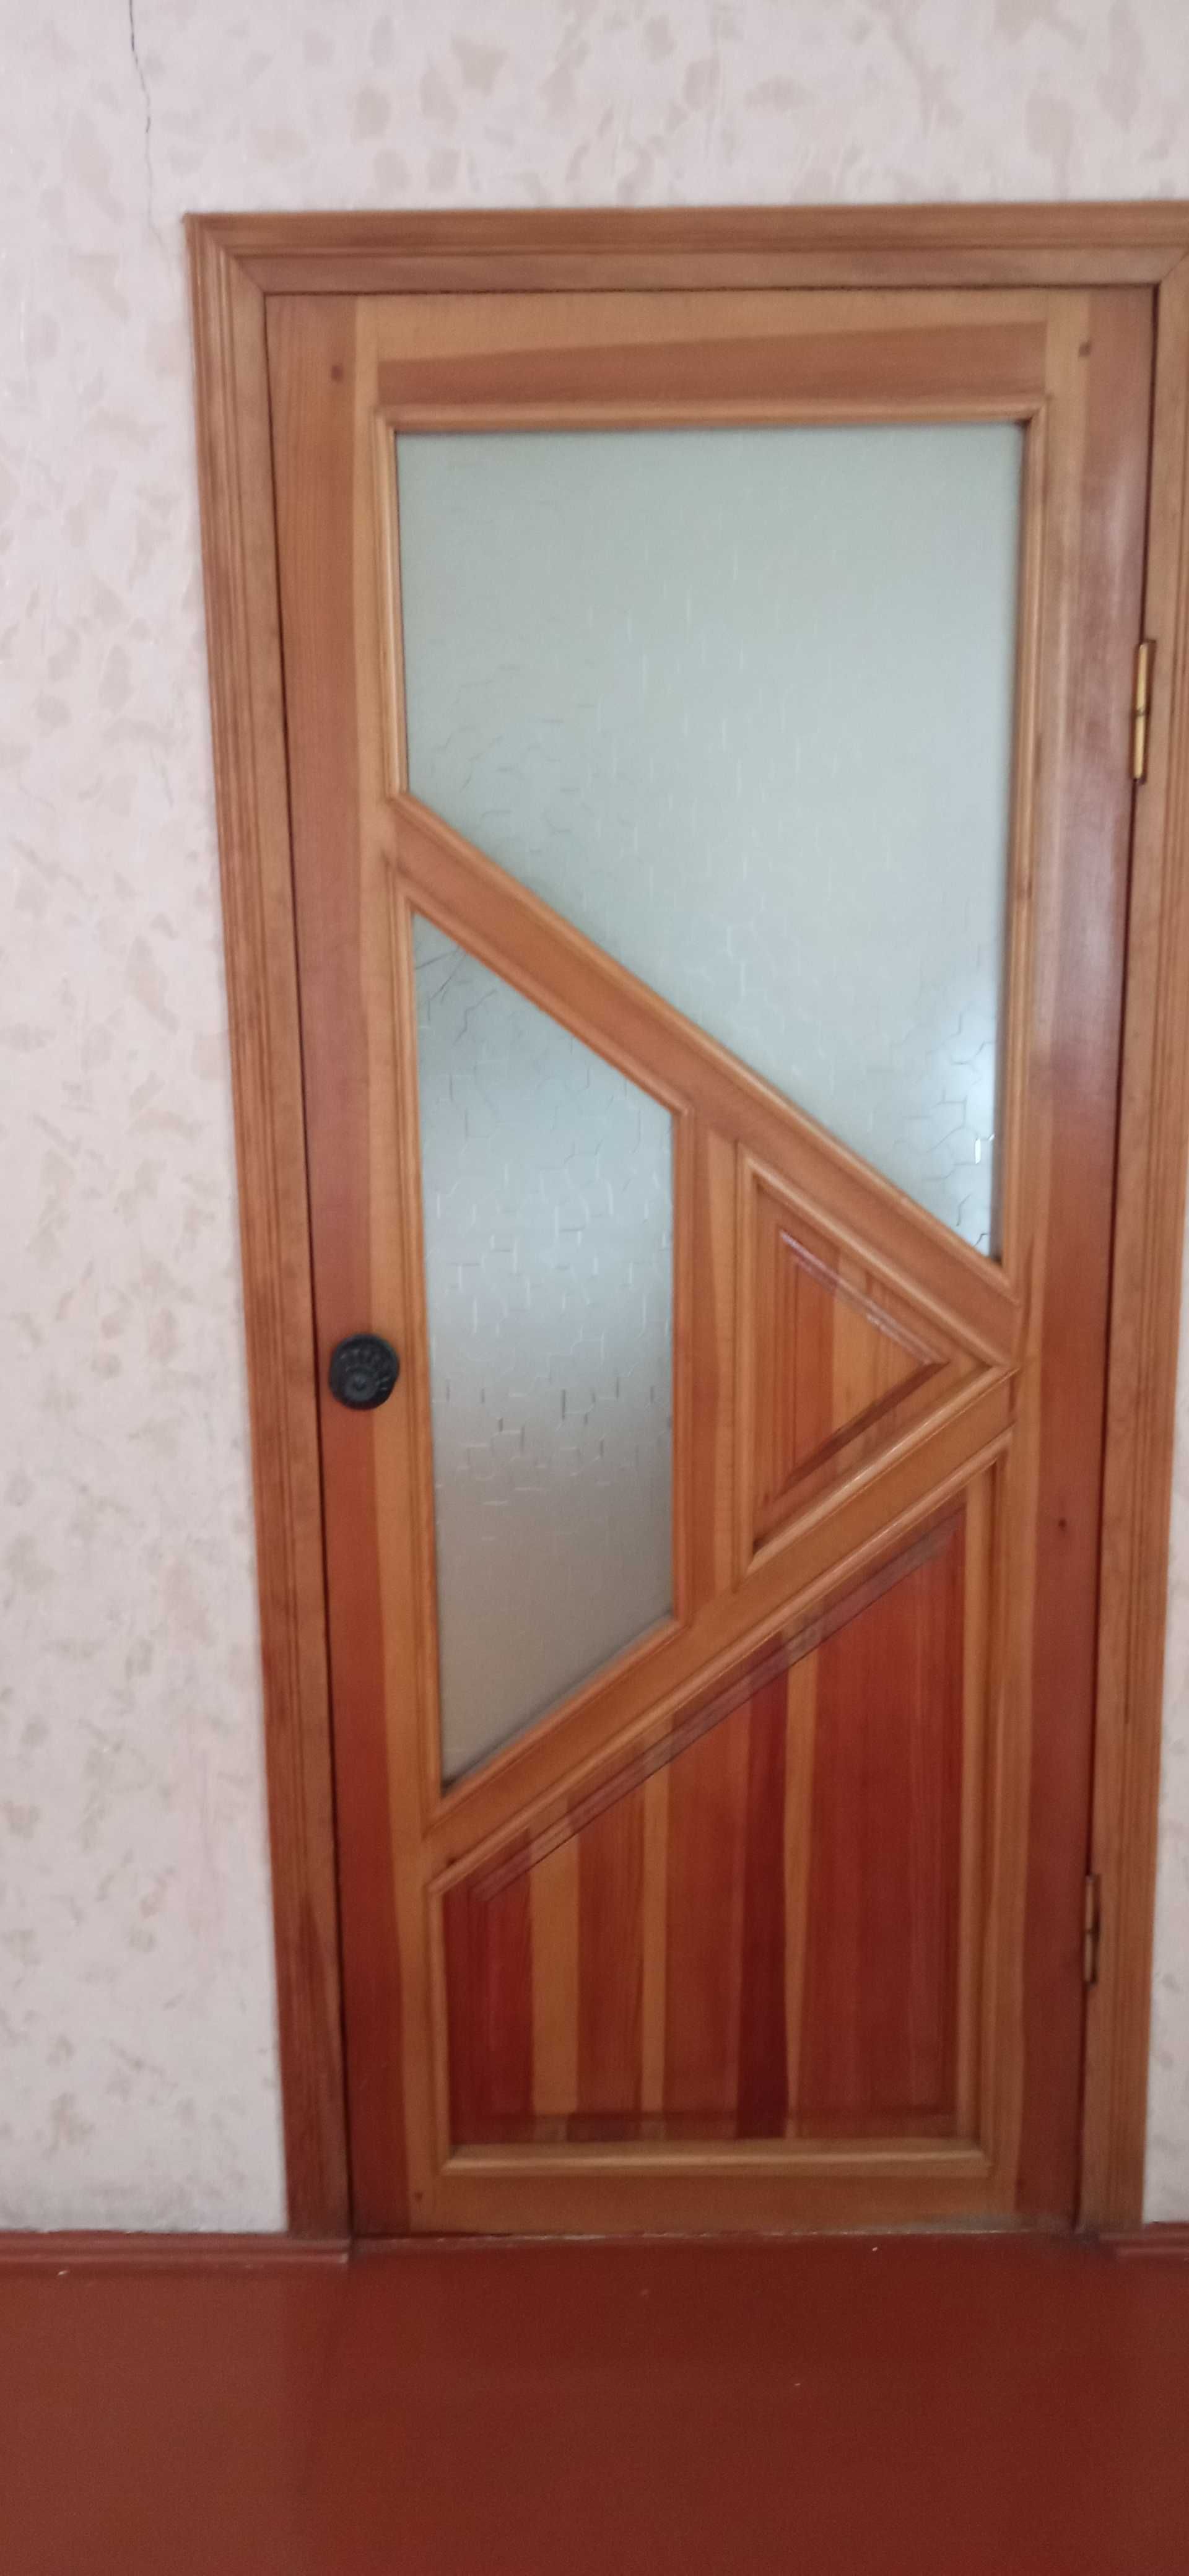 Продается деревянная дверь